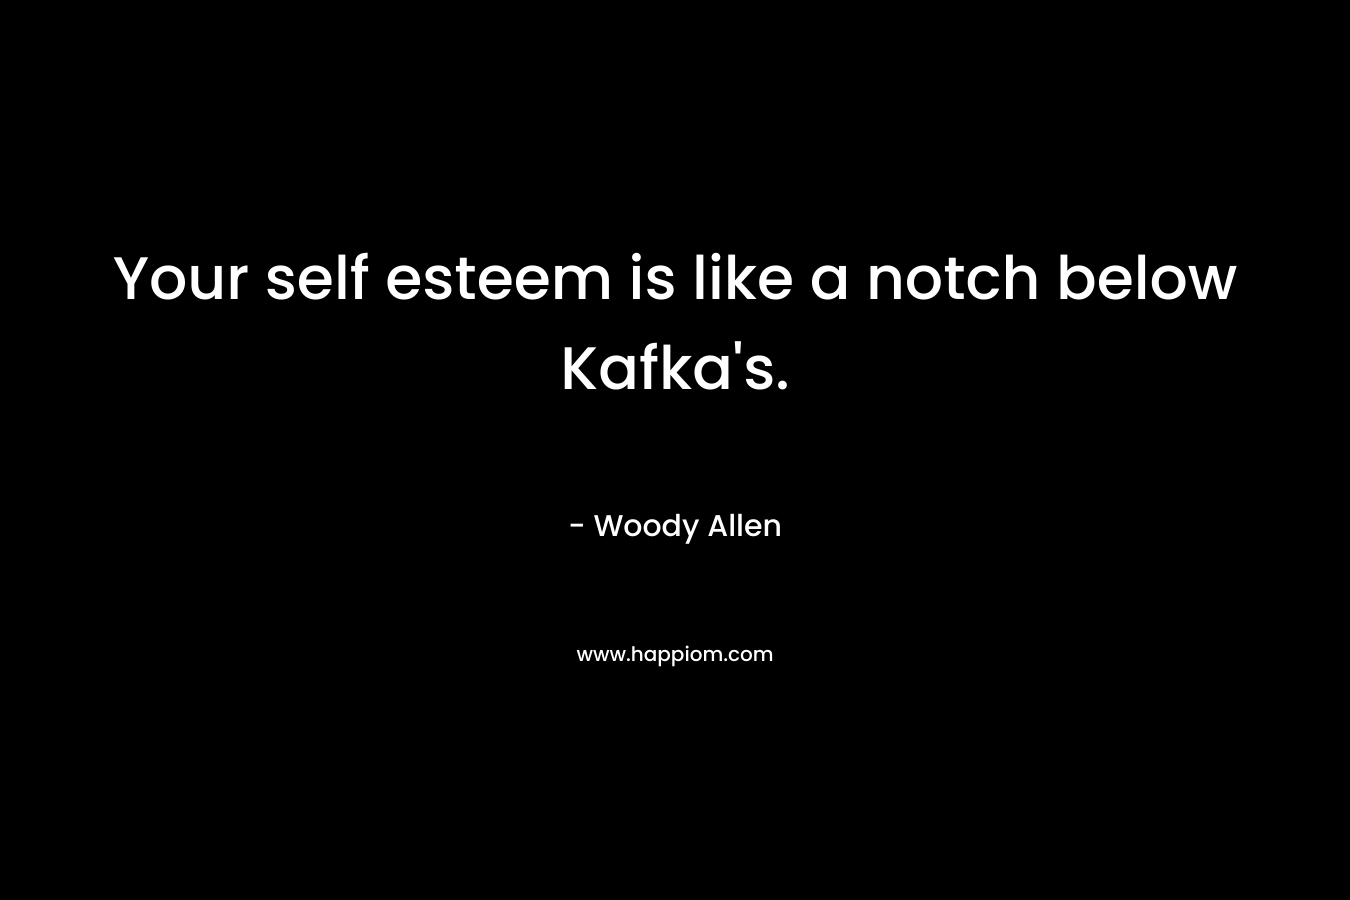 Your self esteem is like a notch below Kafka’s. – Woody Allen